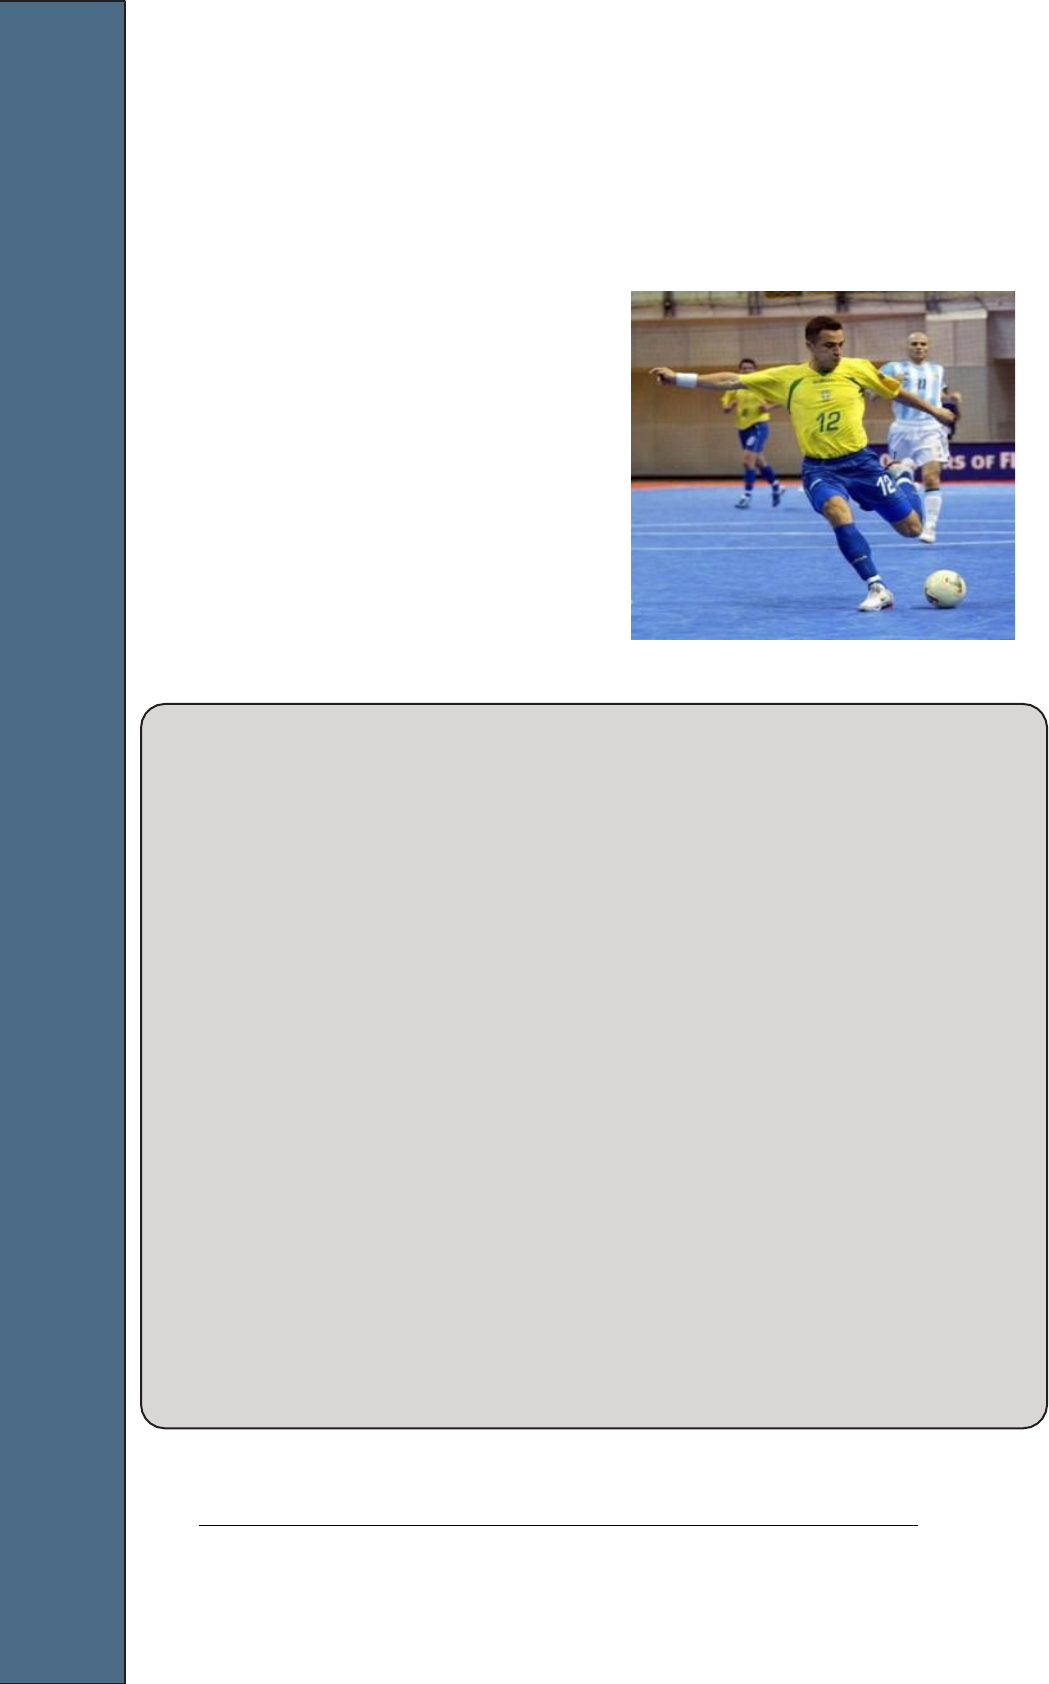 JOGO DE POSSE (18) Exercício recomendado para qualquer faixa etária.  Material: Bola de Futsal, gols; Desenvolvimento: Situação de 5x5+1. Regras:, By Escola de Futsal UFOP